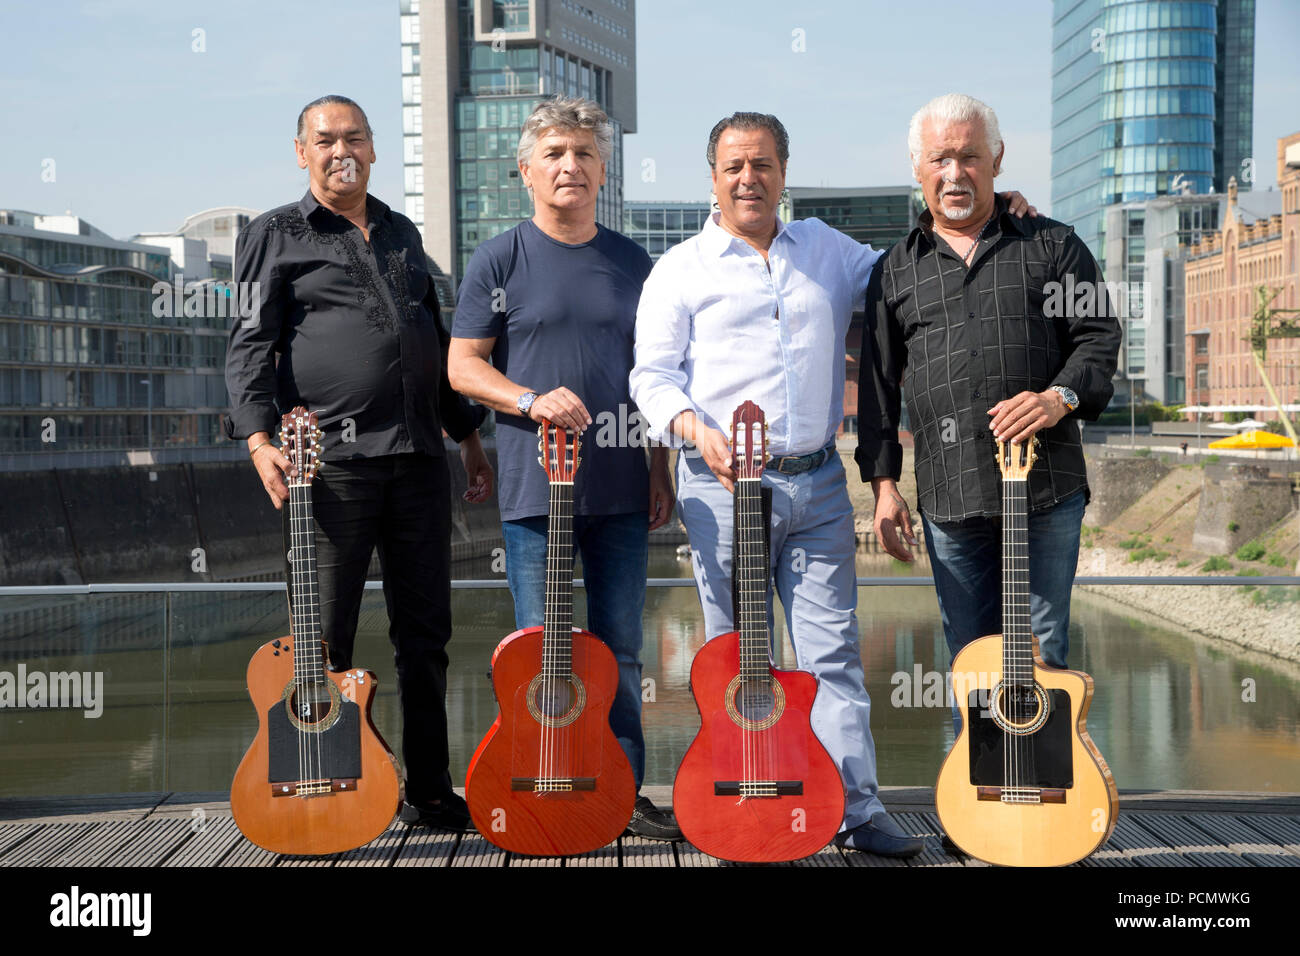 Los Gipsy Kings posan con sus guitarras para una sesión de fotos en el  Medienhafen Duesseldorfer, desde la izquierda: Canut Reyes, Chico Bouchikhi  Patchai Reyes, y Pablo Reyes, en ocasión de su